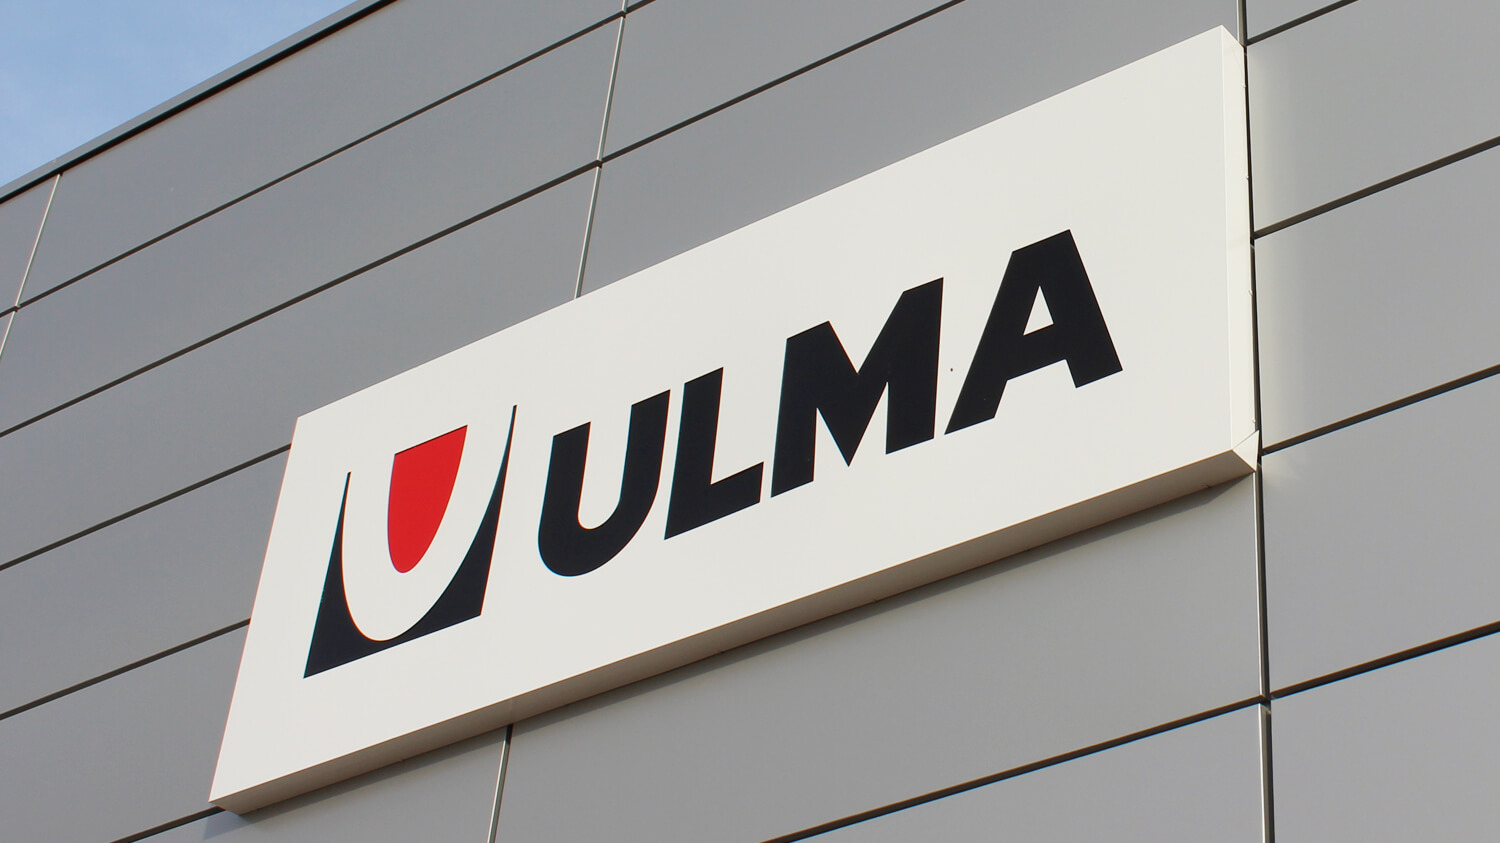 ULMA - pannelli luminosi - ULMA - scatola luminosa pubblicitaria con nome e logo della società